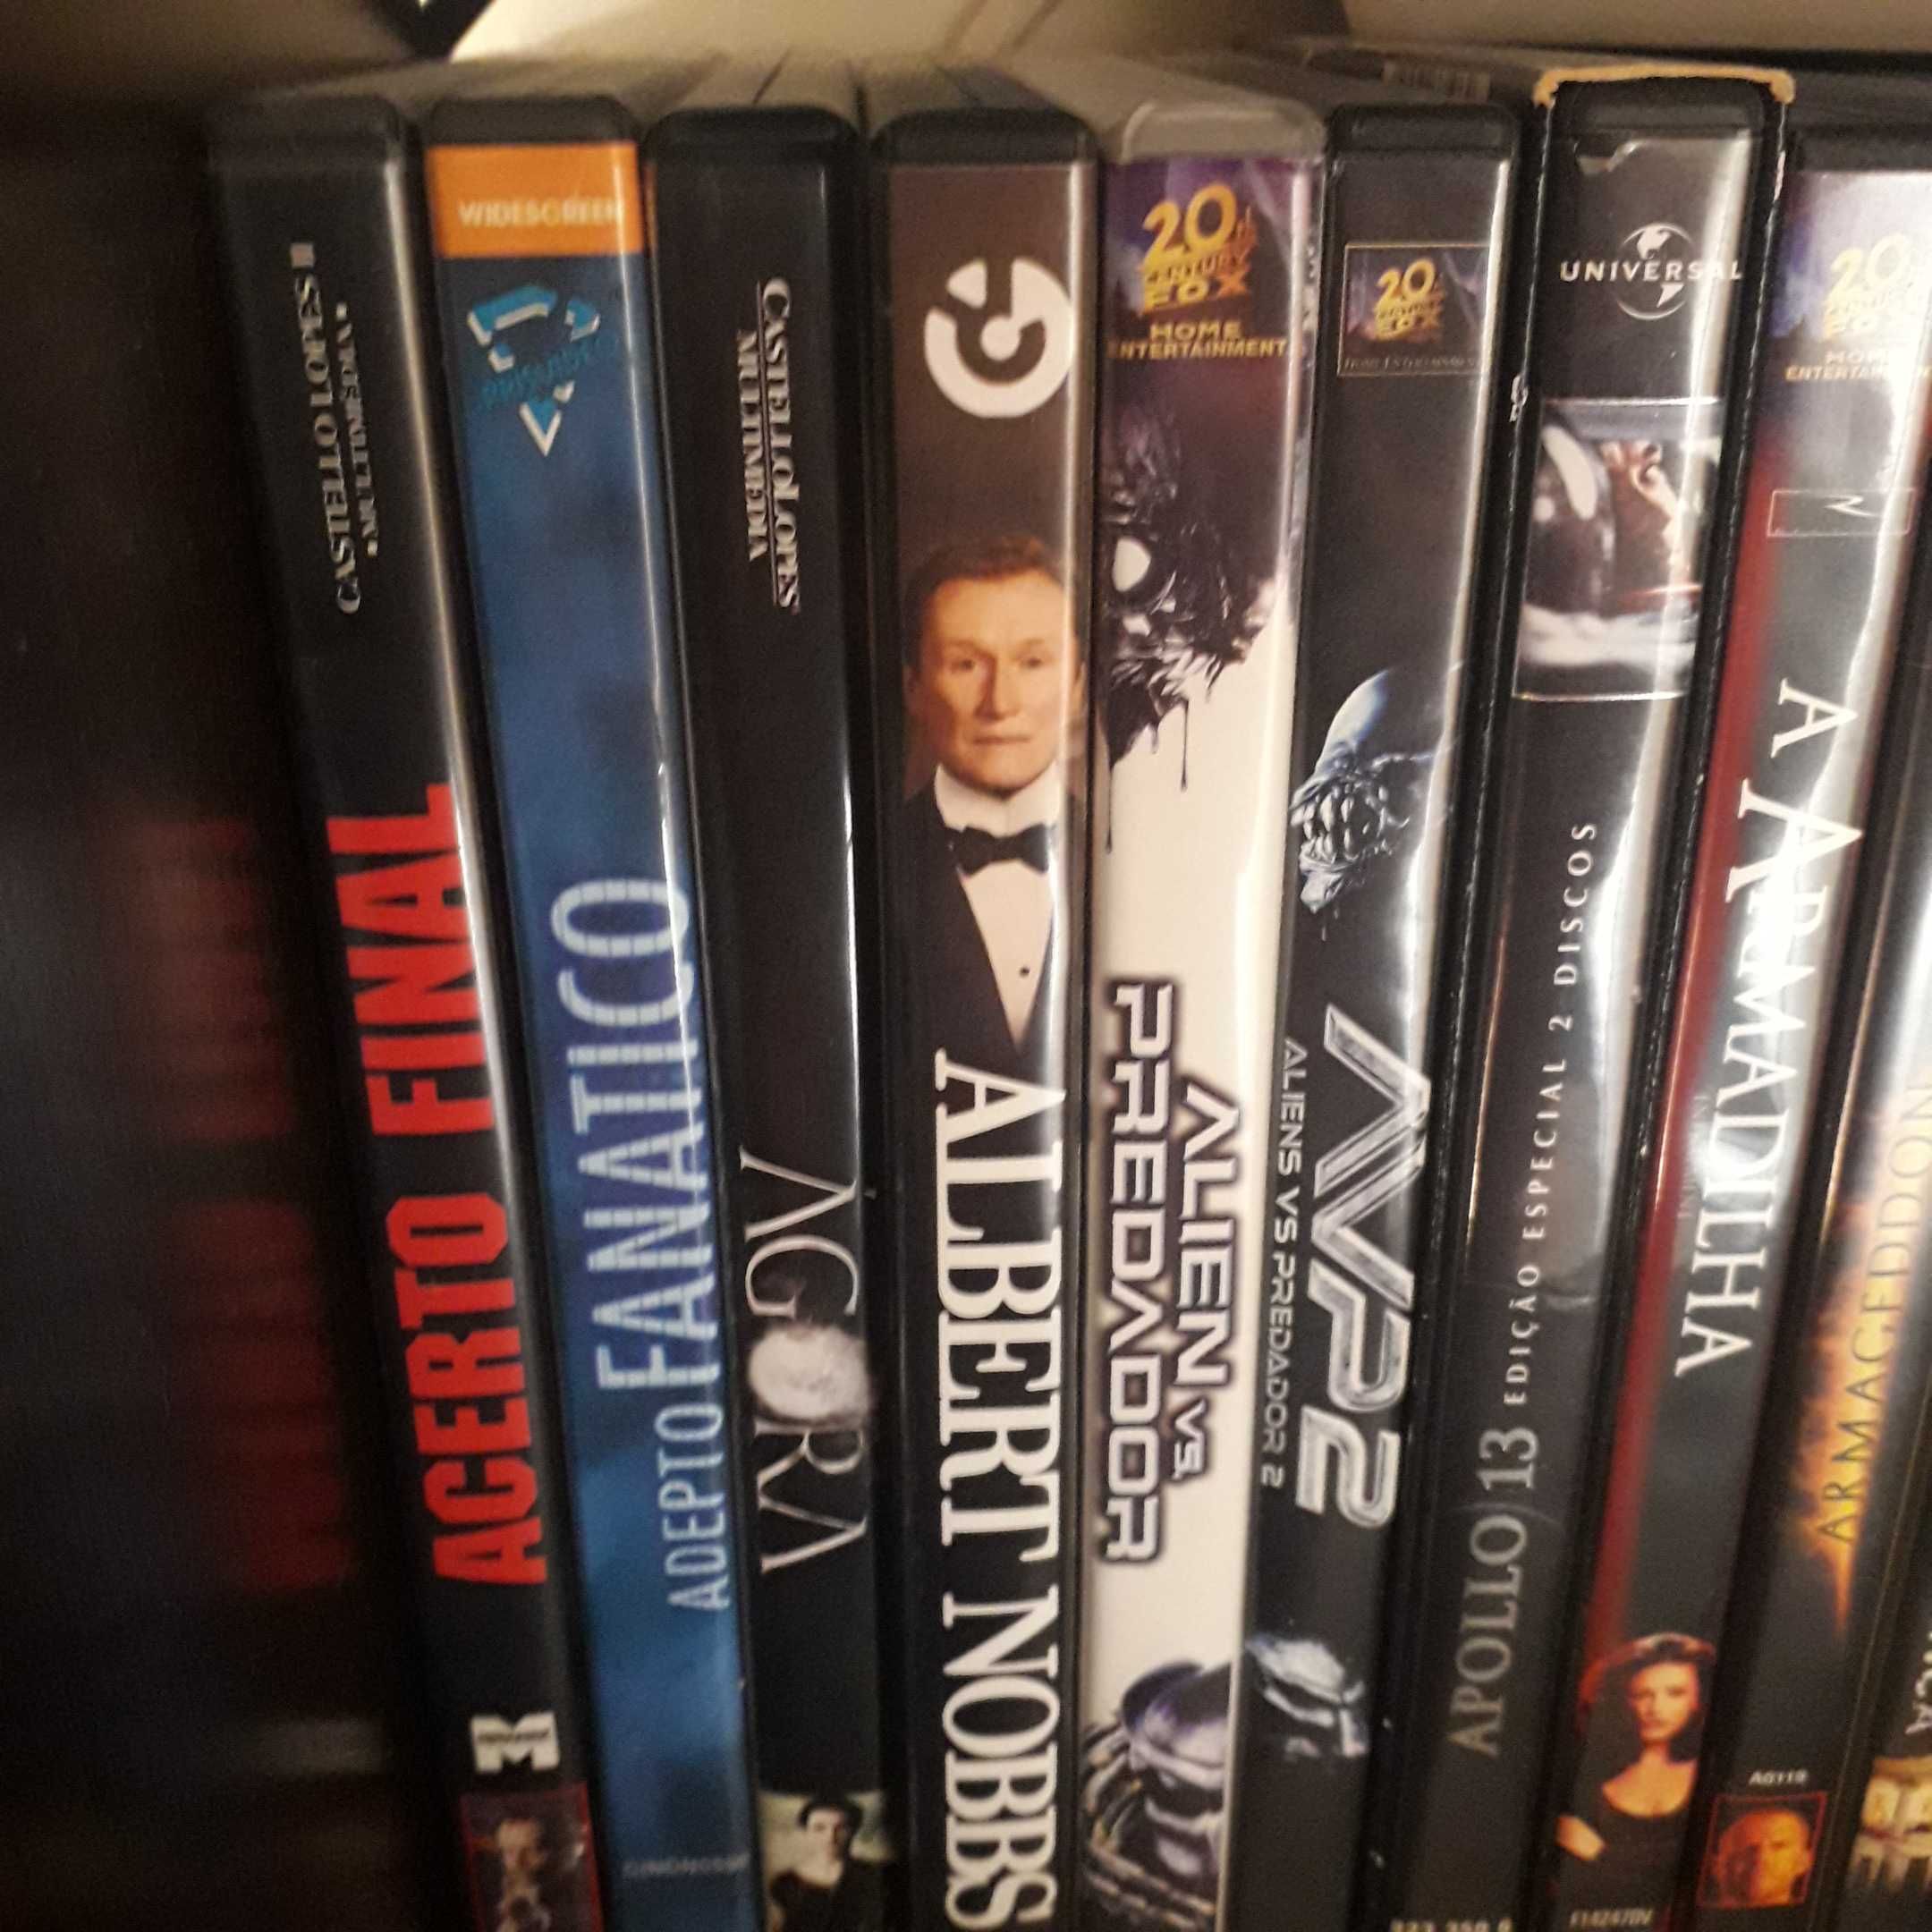 Filmes em DVD - Pack 1 (A até C)